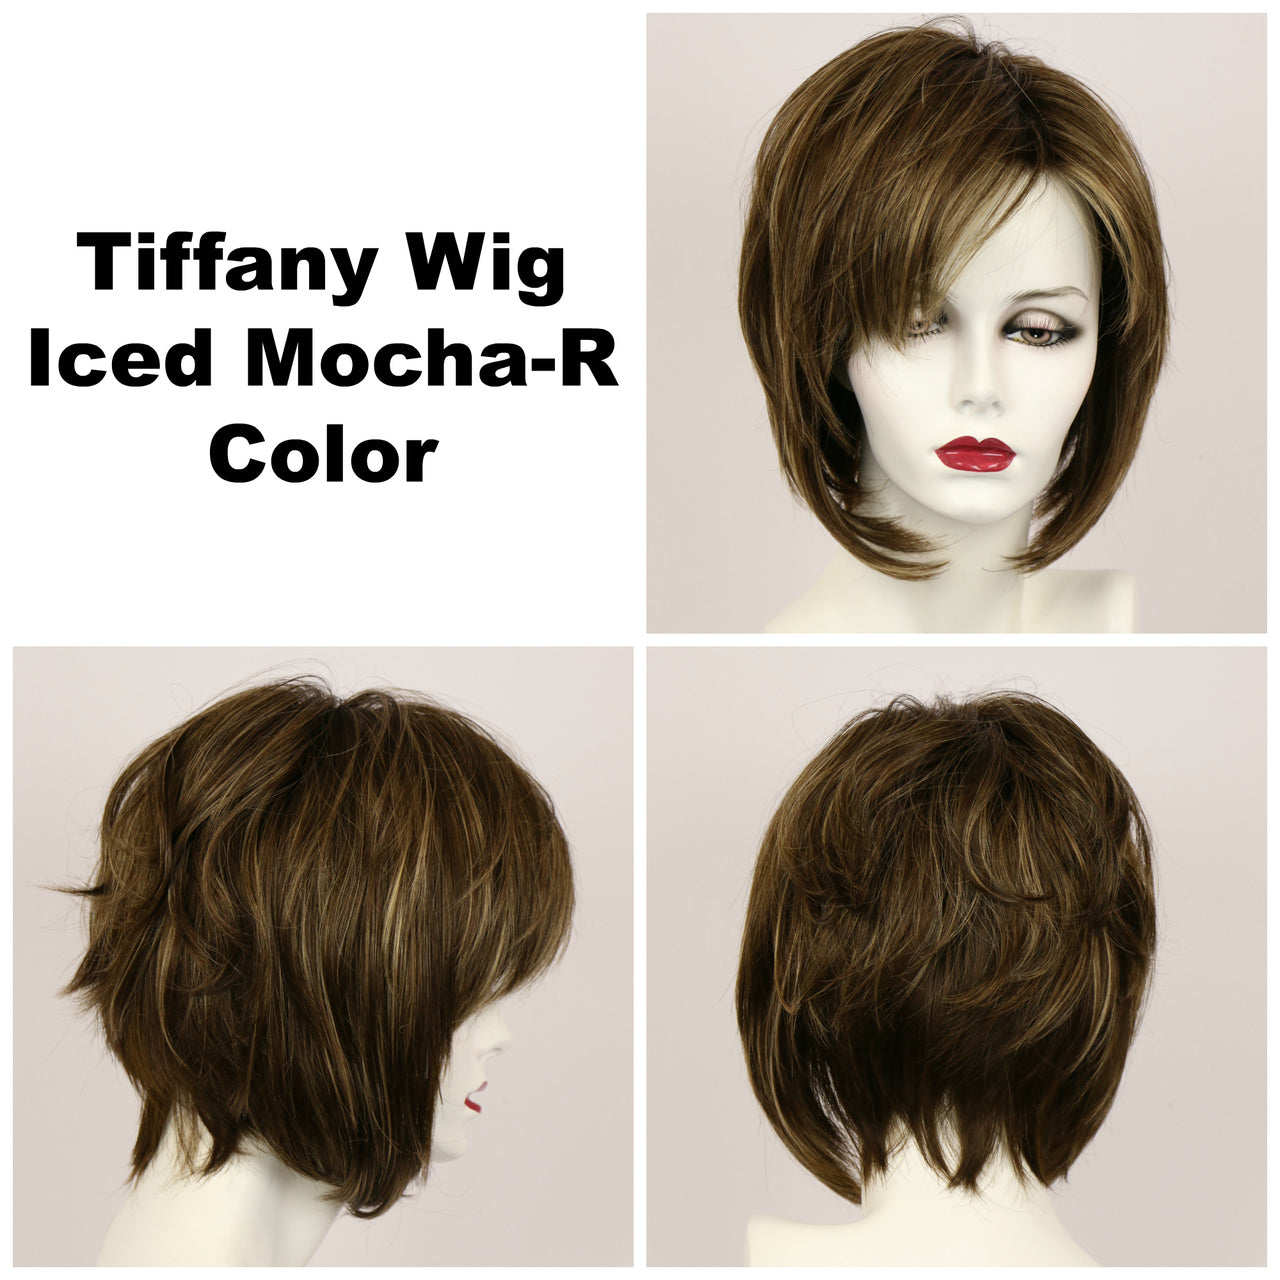 Iced Mocha-R / Tiffany w/ Roots / Medium Wig